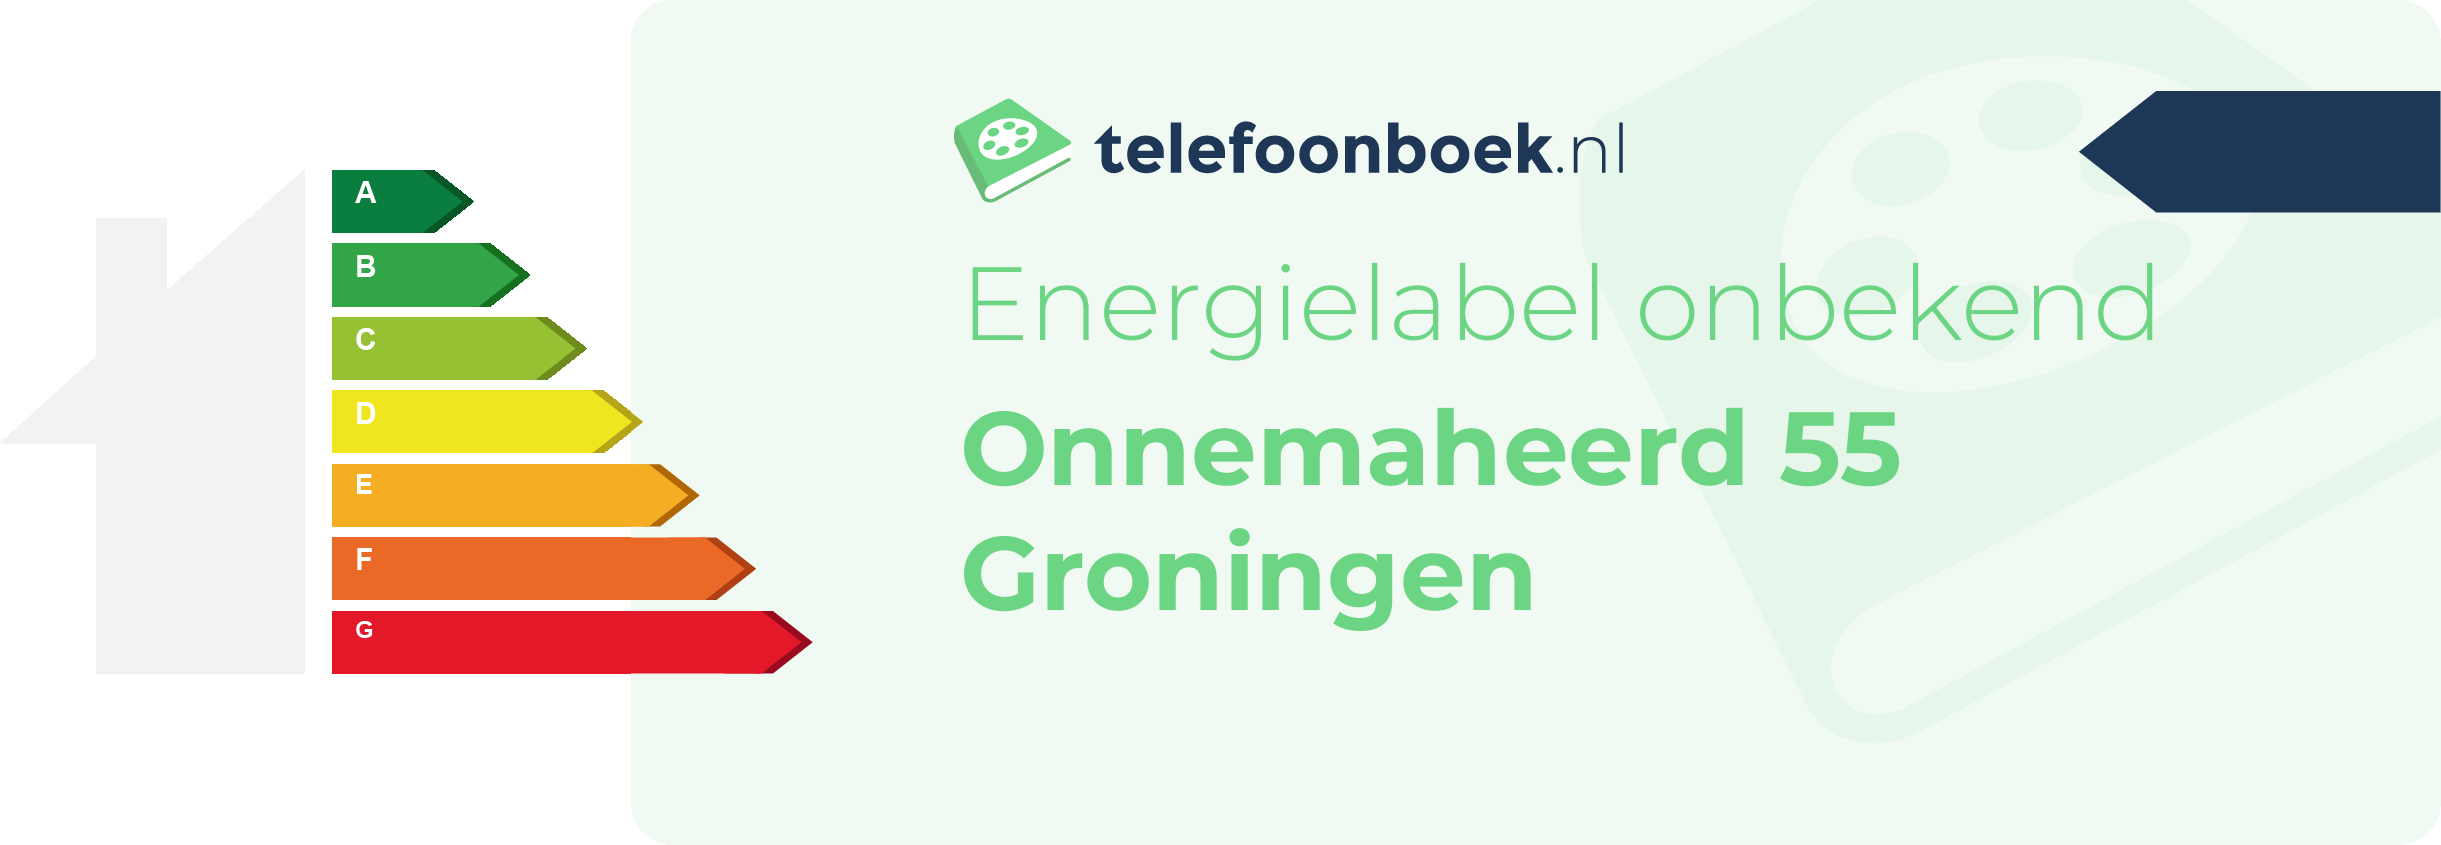 Energielabel Onnemaheerd 55 Groningen